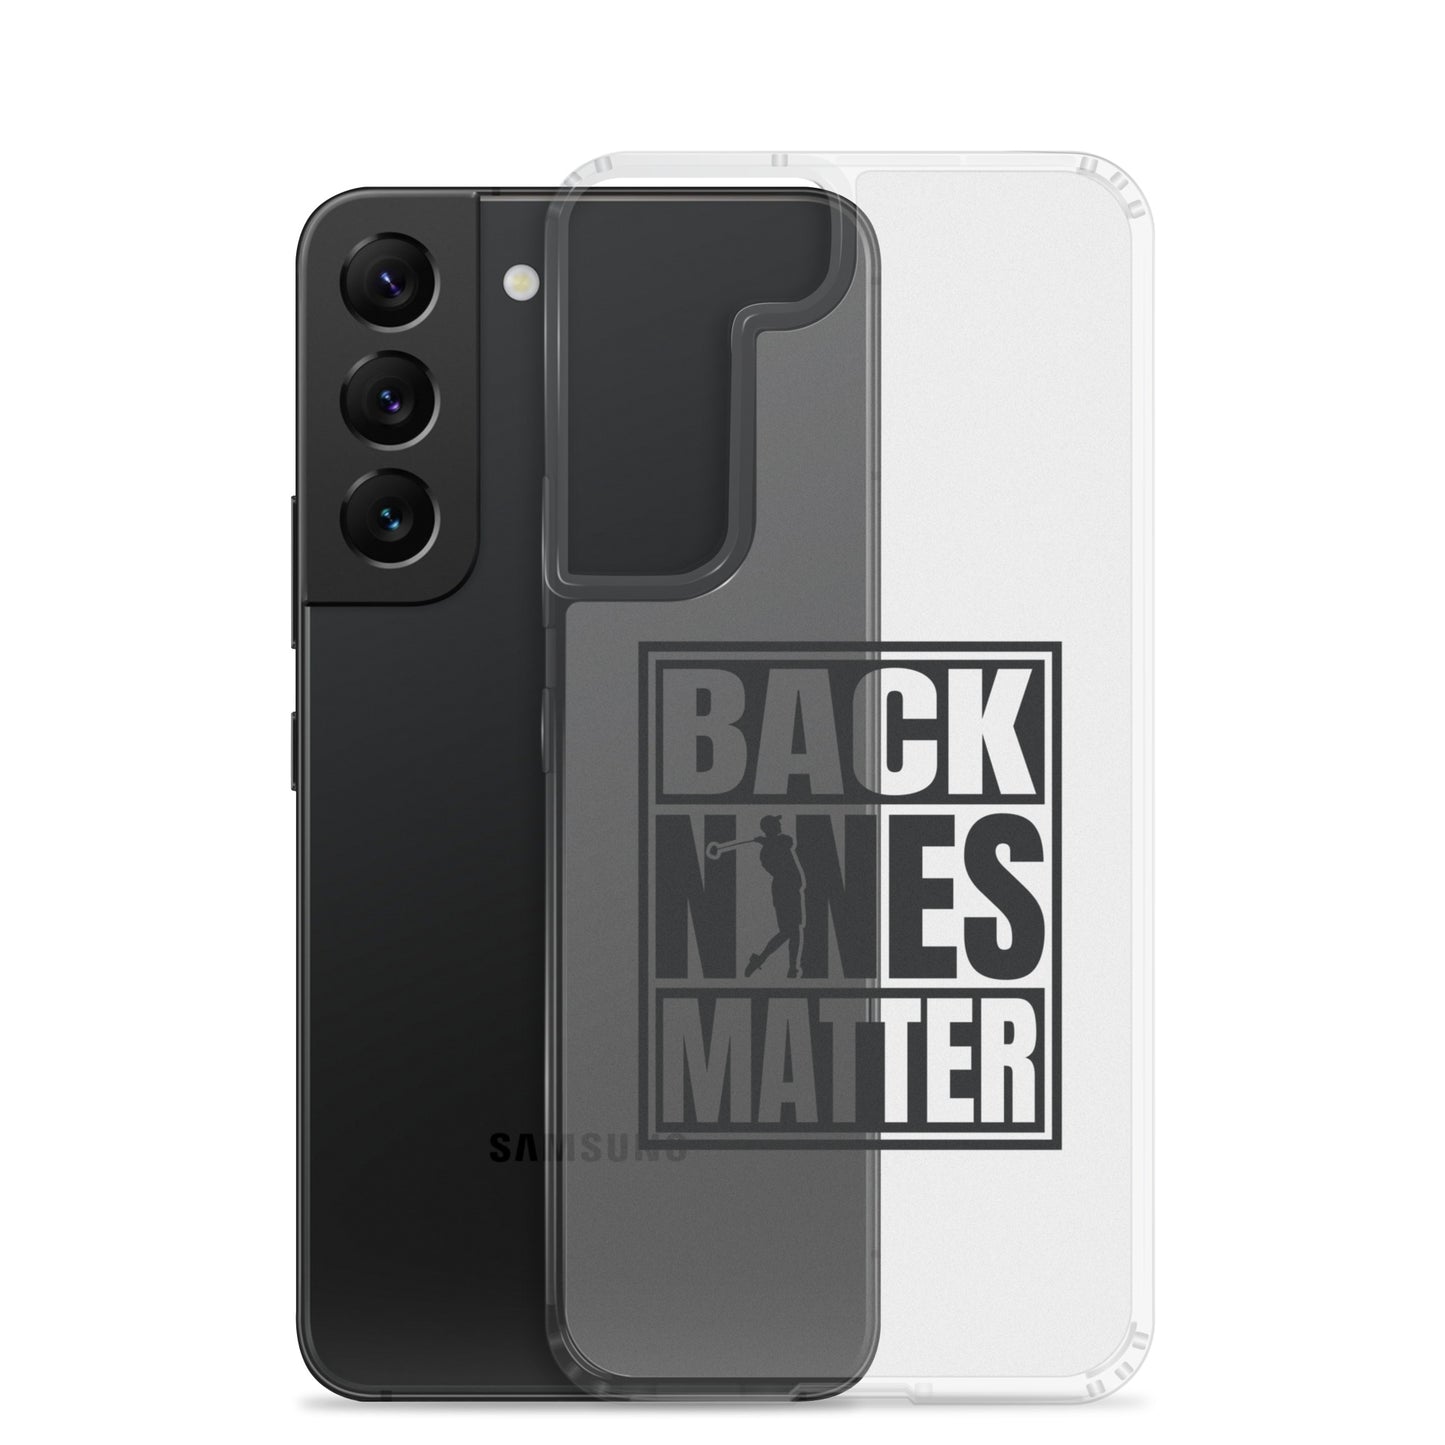 Back Nines Matter Samsung Case